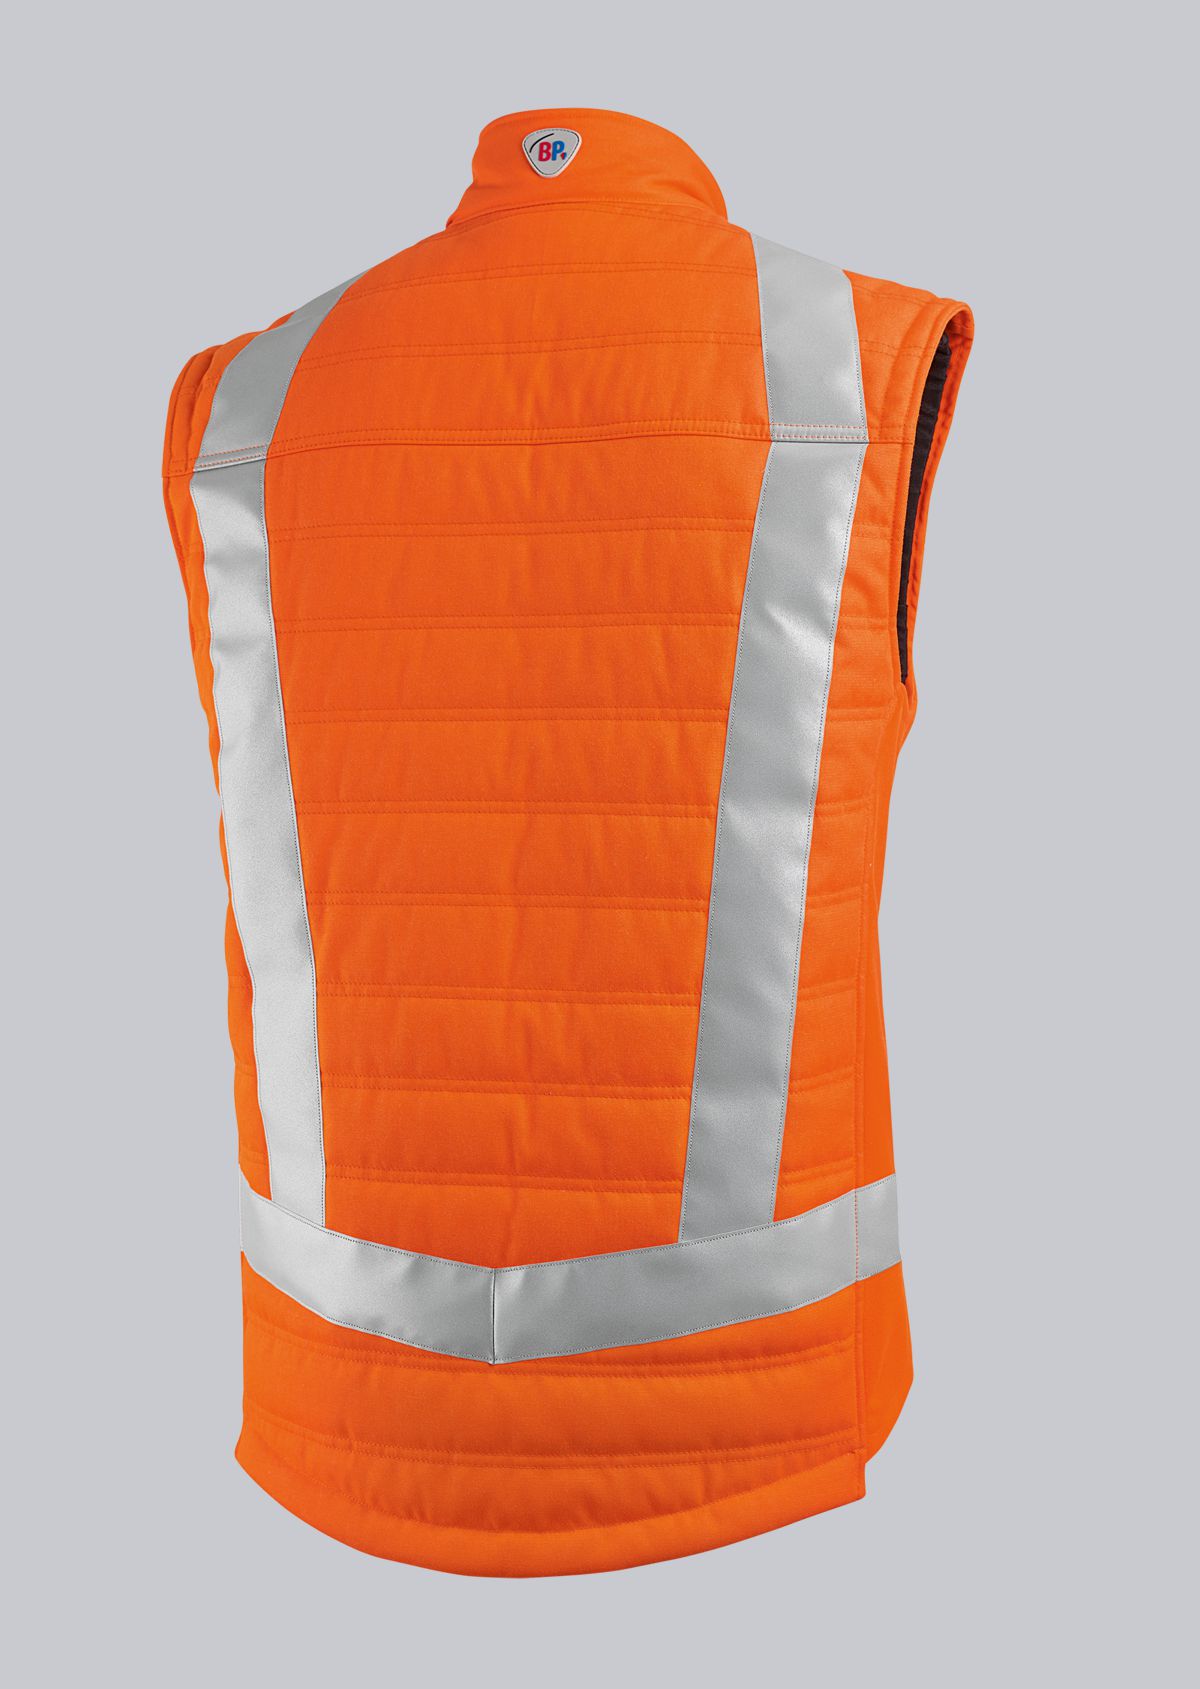 BP® High-visibility thermal waistcoat